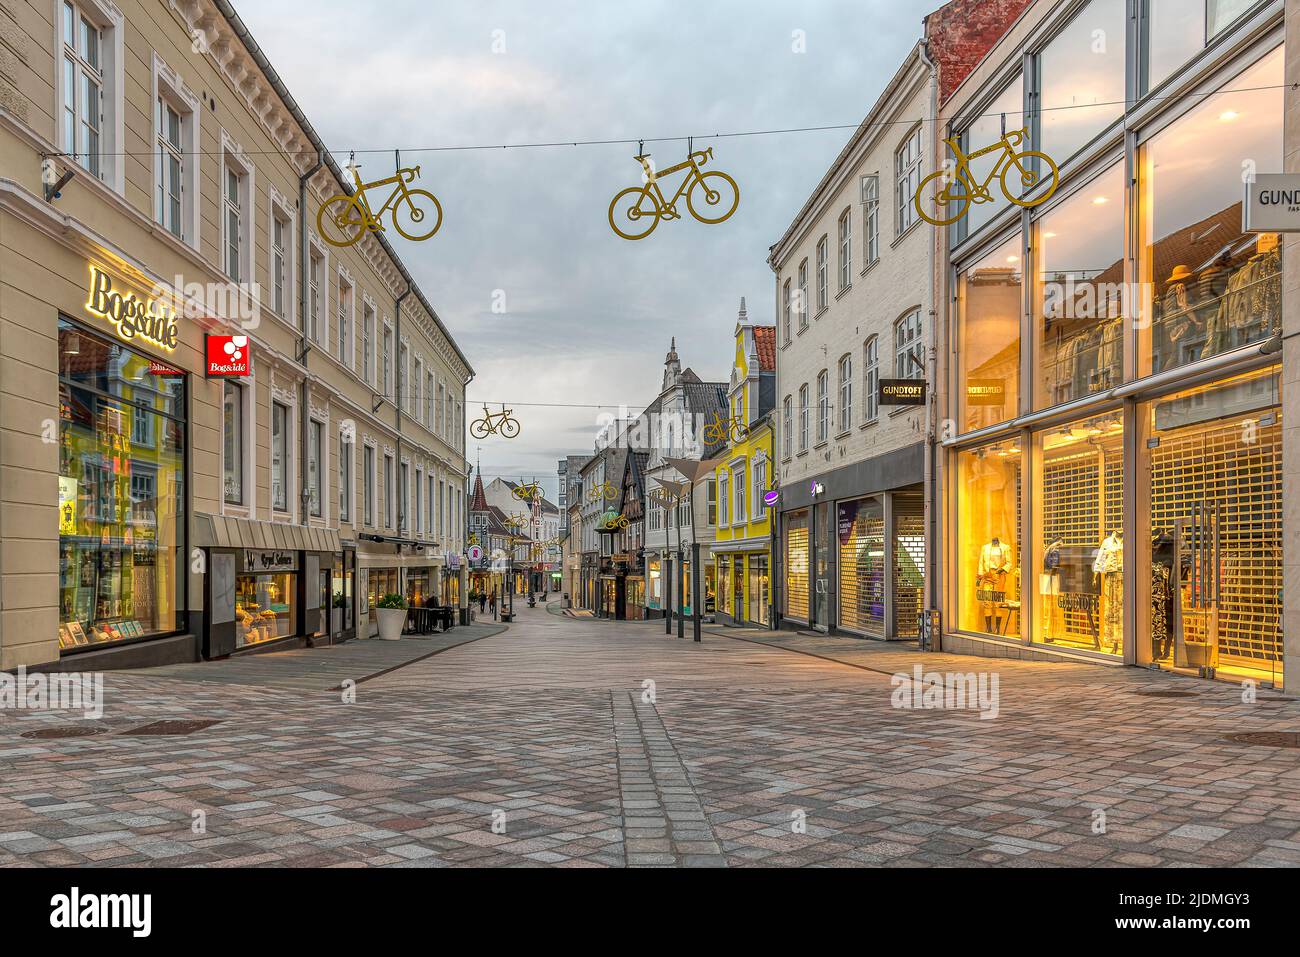 Fahrradlogos für die Tour de France hängen im sanften Abendlicht über der Einkaufsstraße in Vejle, Dänemark, 14. Juni 2022 Stockfoto